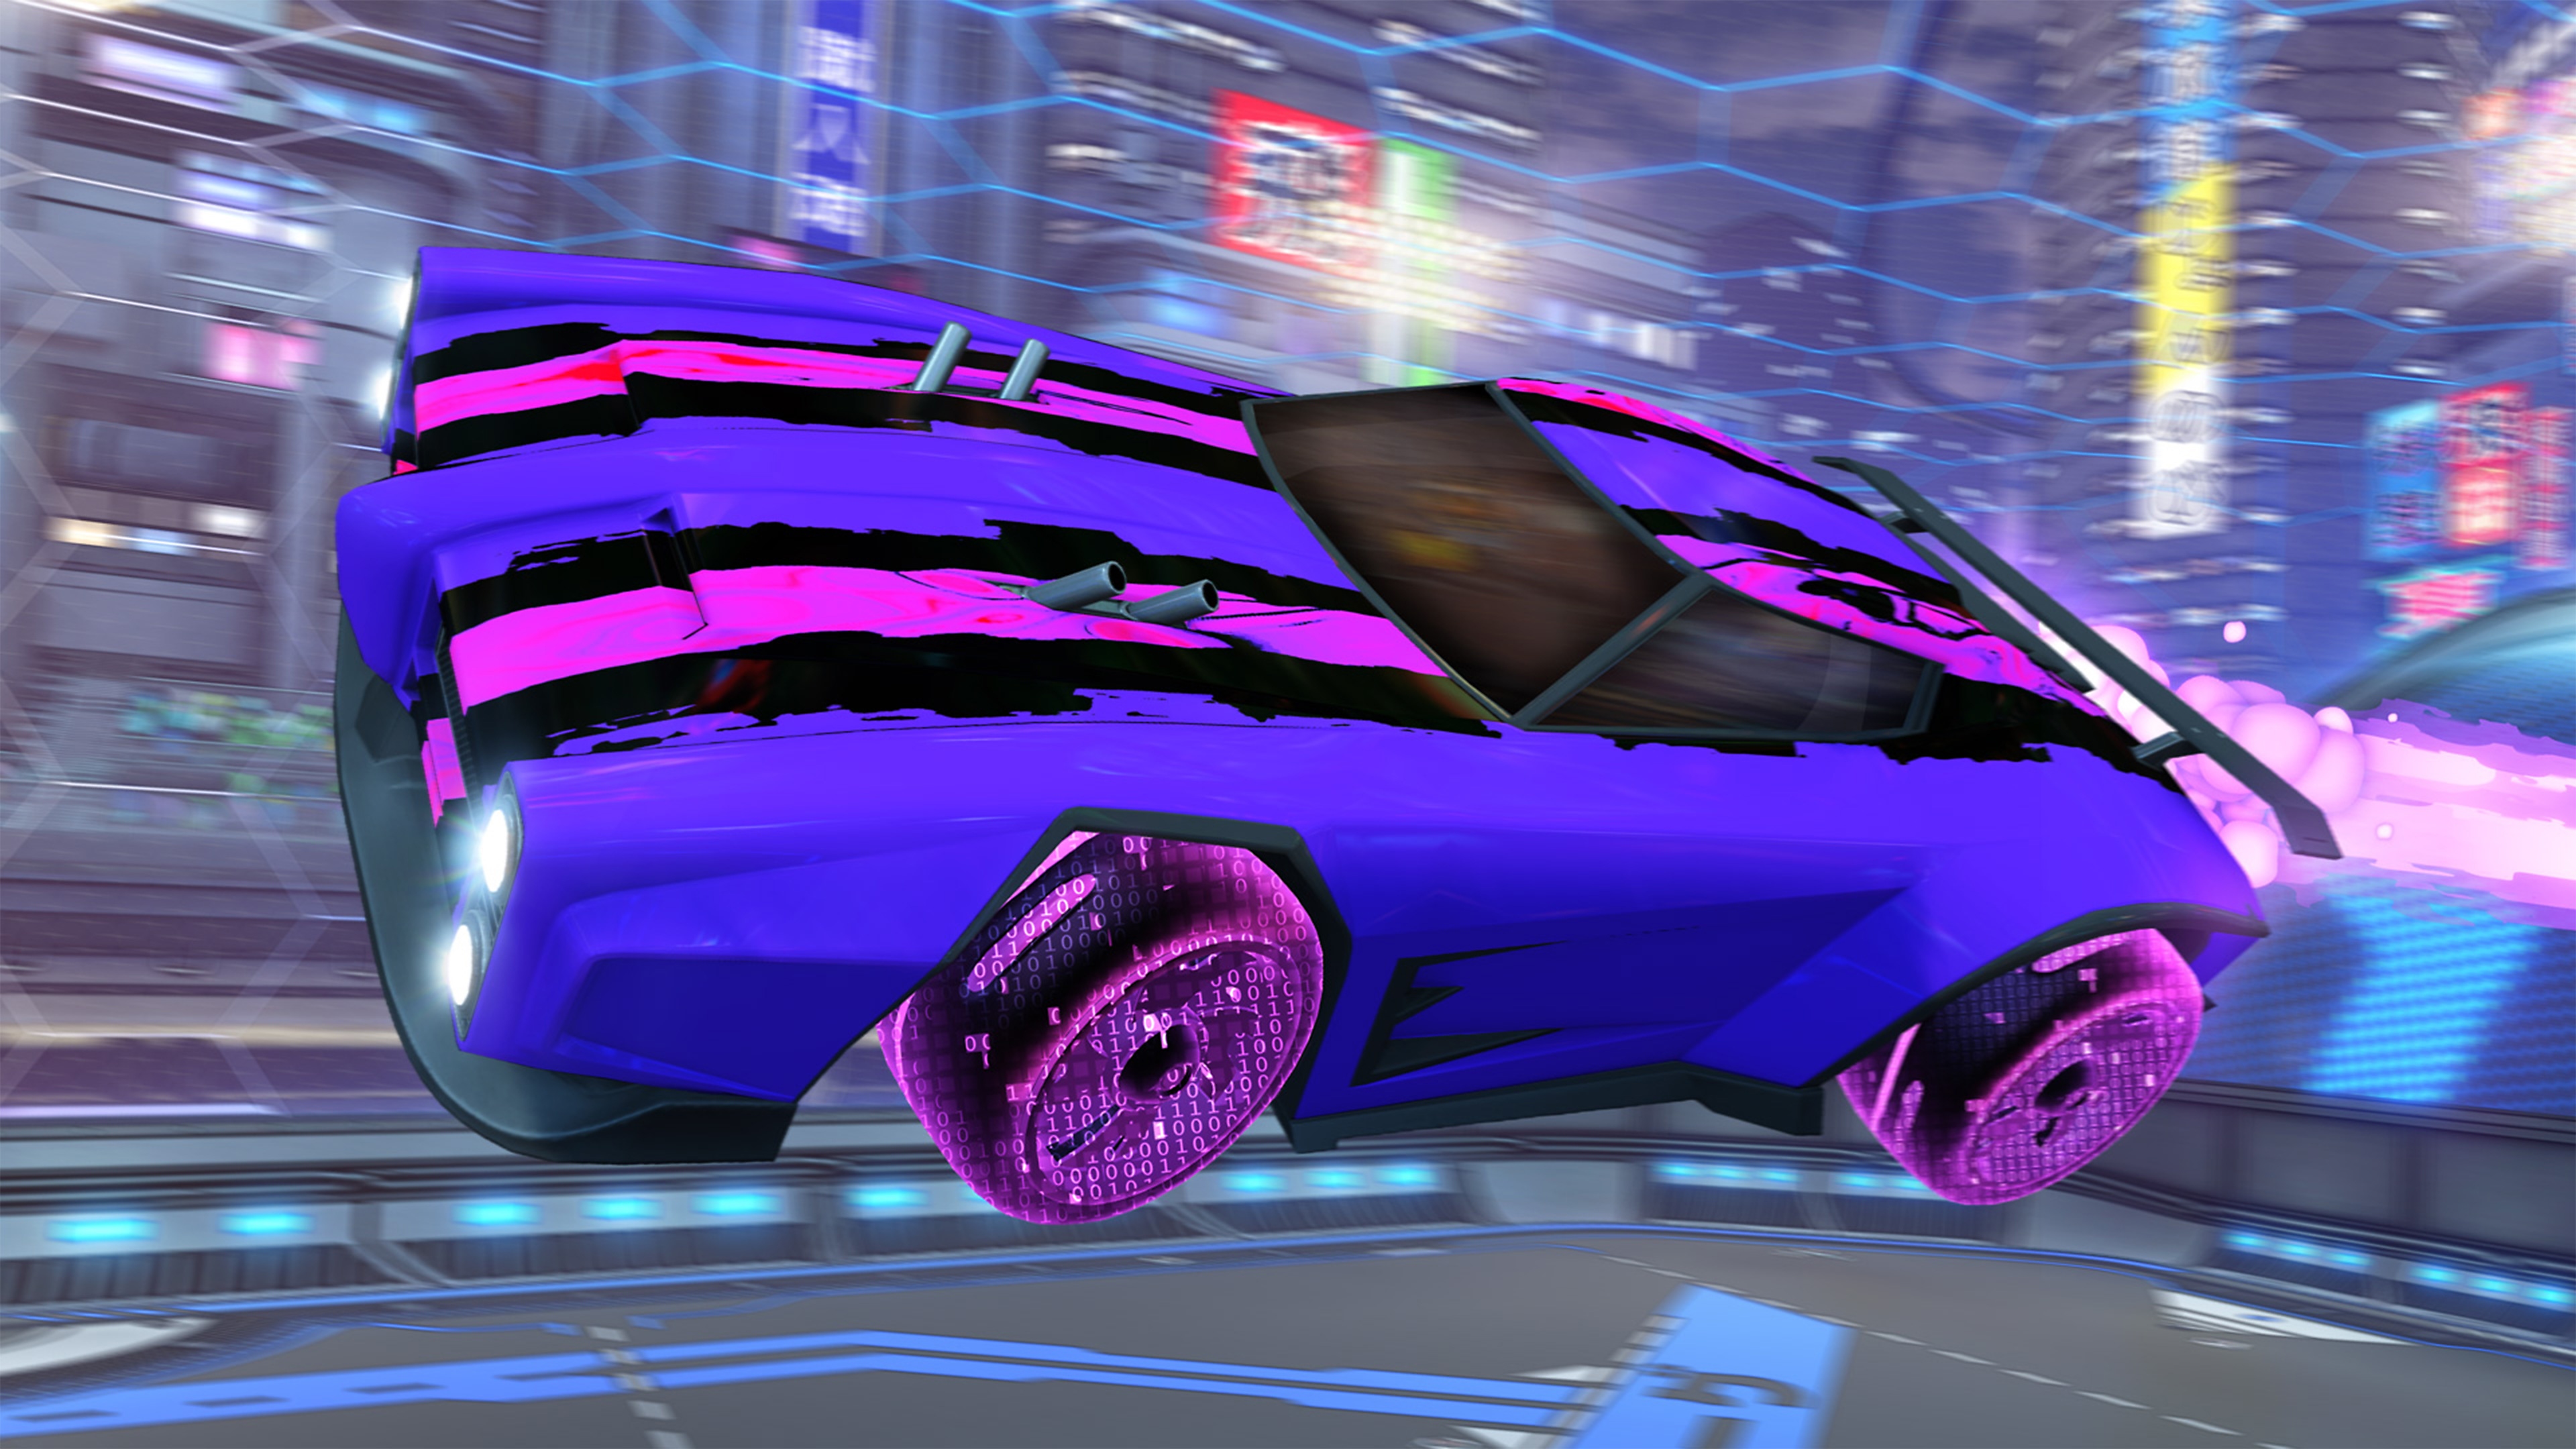 Capture d'écran de Rocket League montrant une voiture violette avec des bandes en damier roses et noires